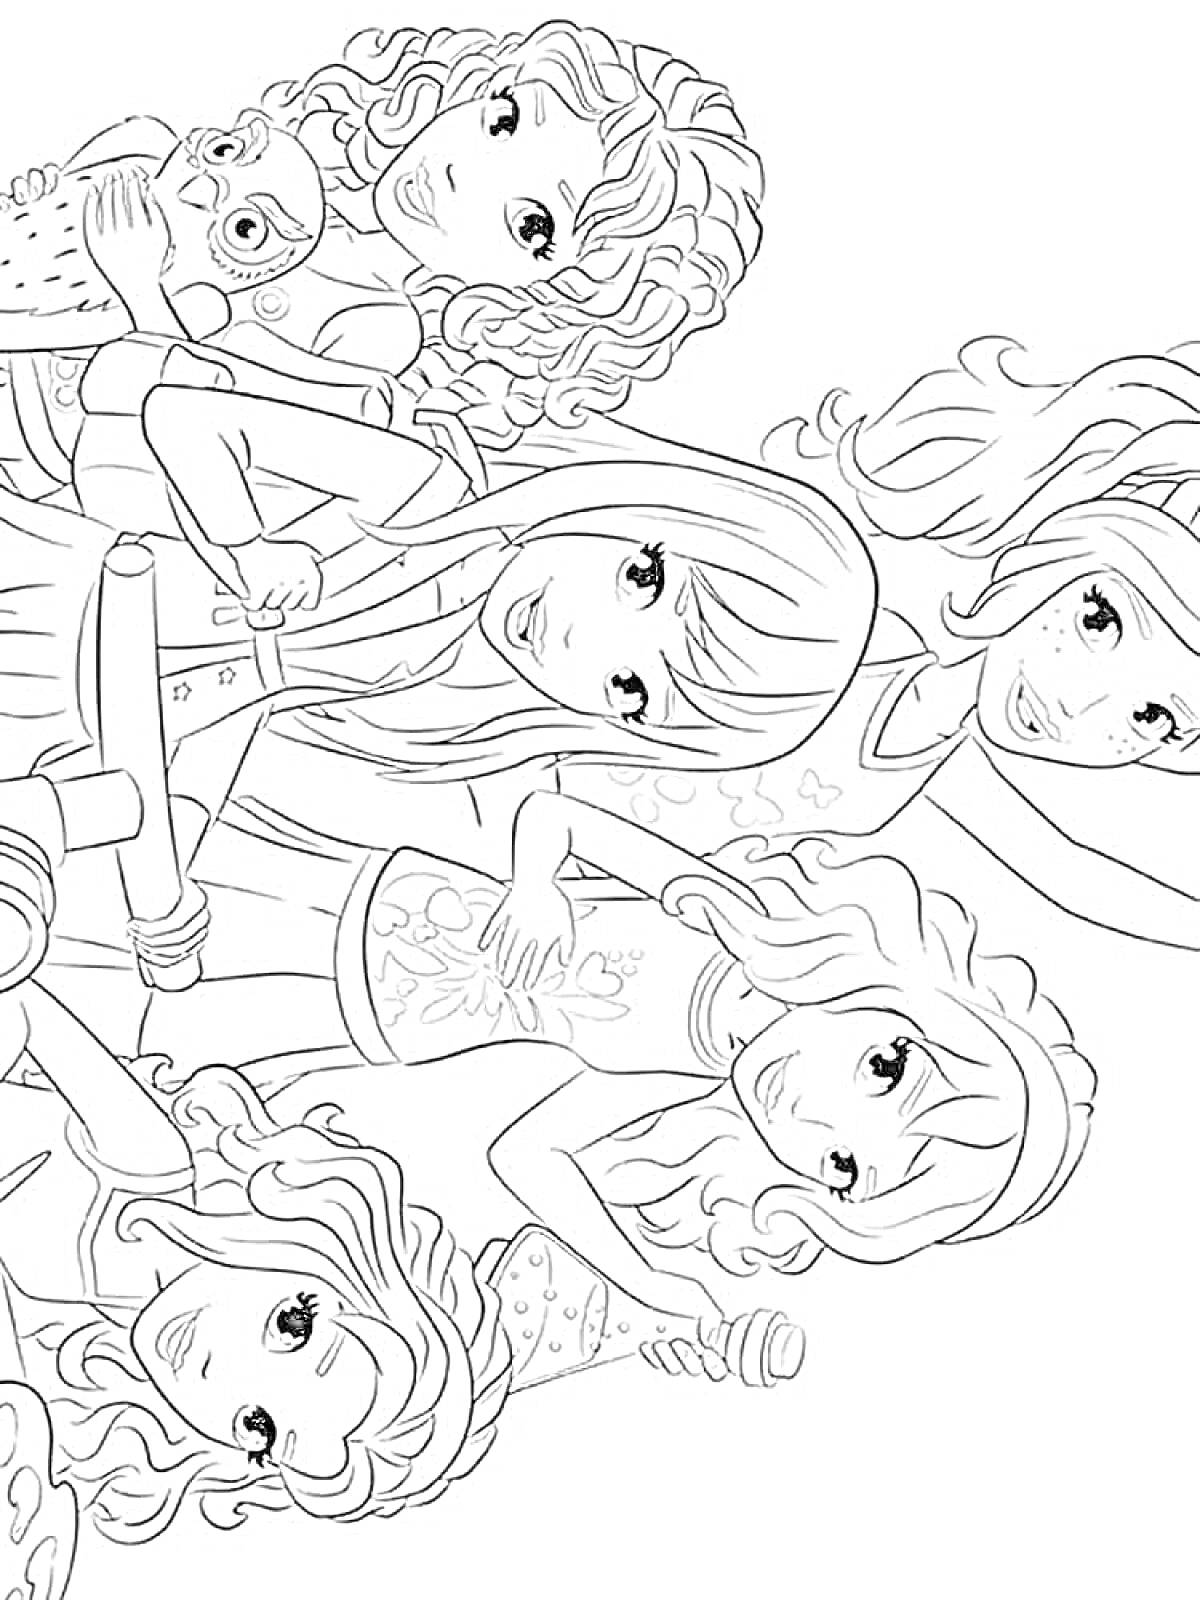 Раскраска Пять подружек Лего Френдс с волнистыми волосами, спортивными костюмами и домашними животными